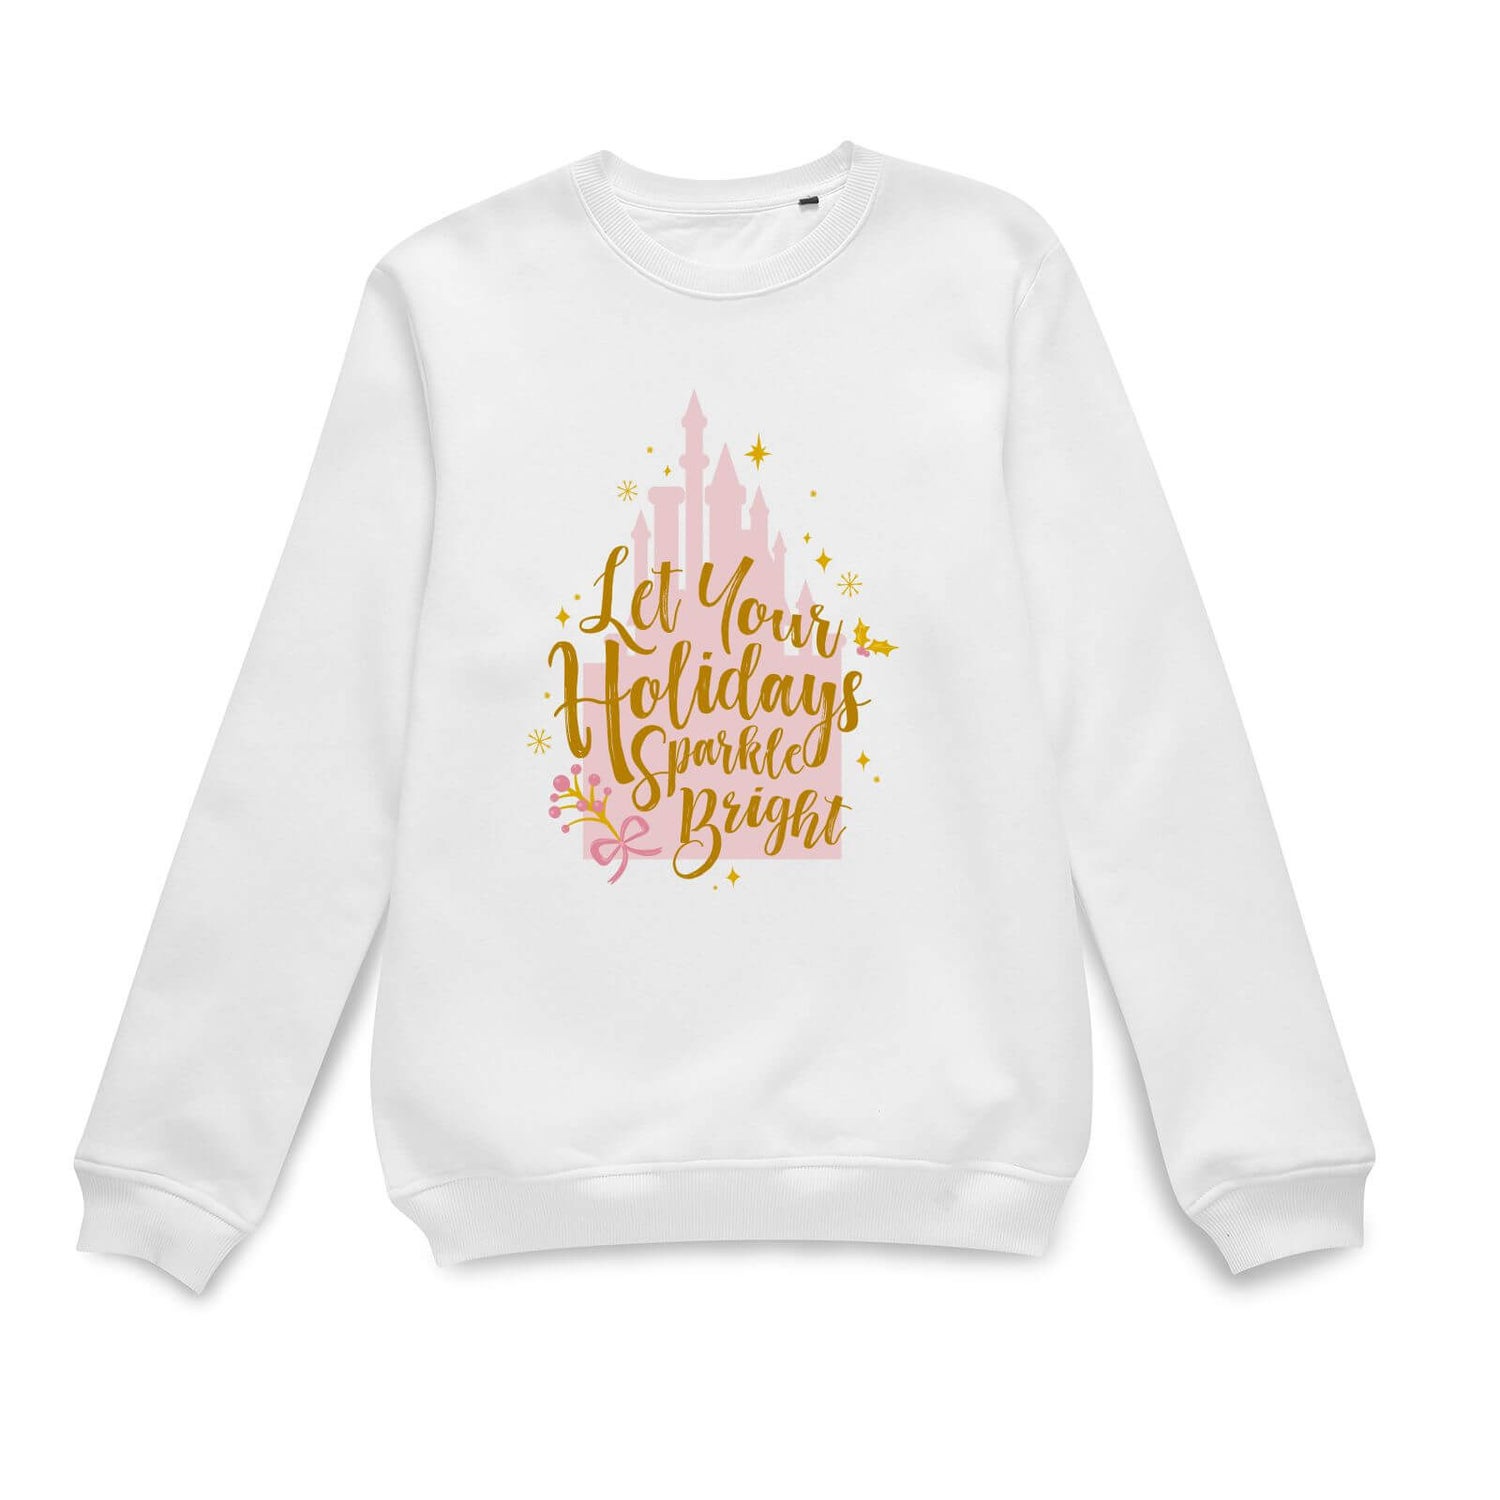 Disney Holiday Spakle Bright Weihnachtspullover – Weiß